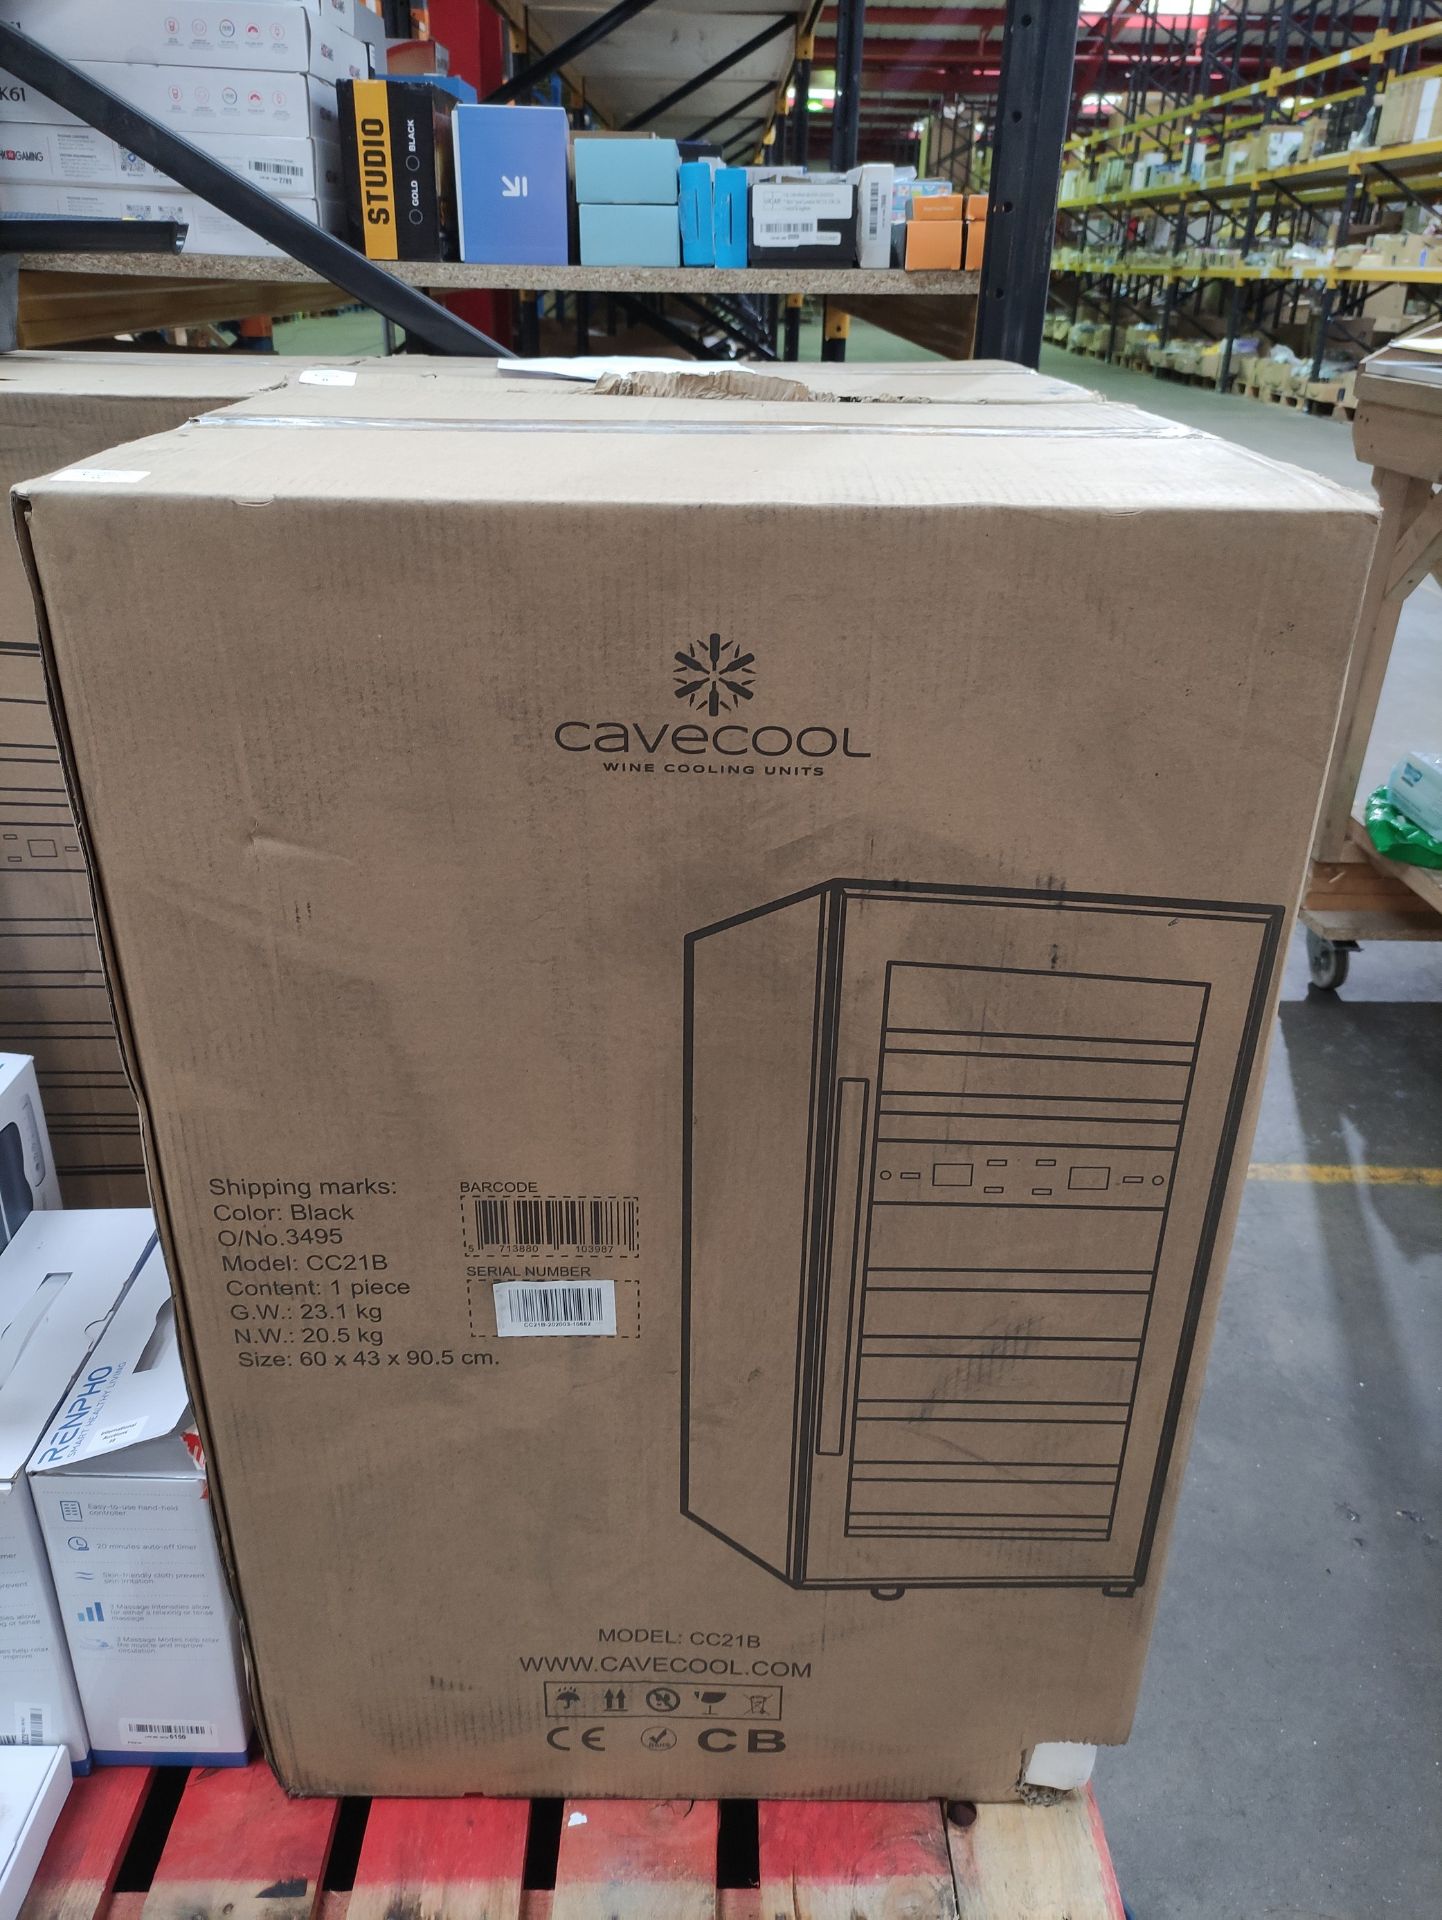 RRP £459.74 CaveCool Wine Cooling Units Model:CC21B - Image 2 of 2